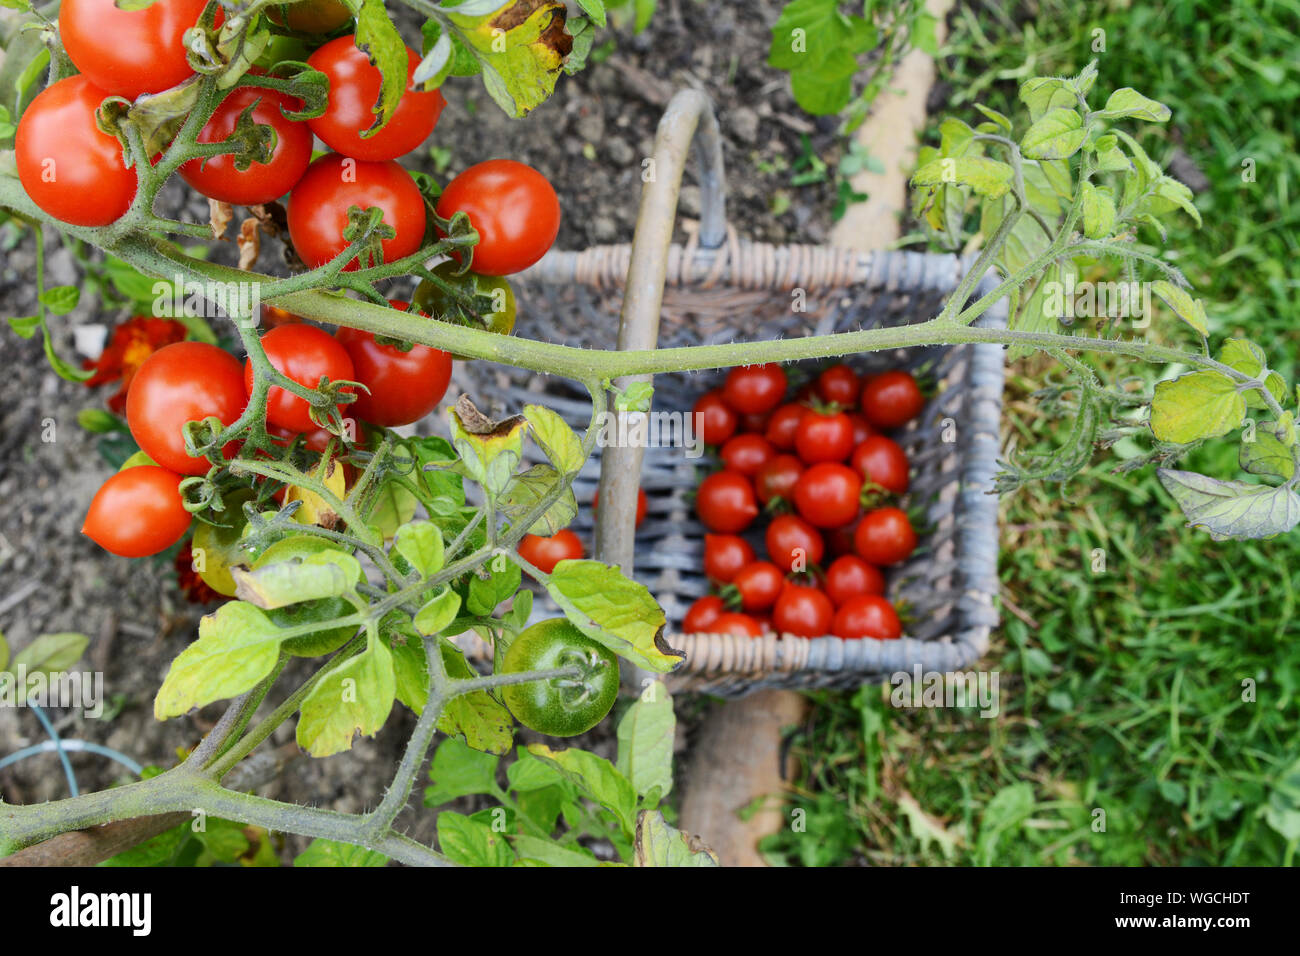 Tomates cerises rouges et vertes sur la vigne, en focus sélectif au-dessus d'un panier de fruits cueillis dans un jardin potager Banque D'Images